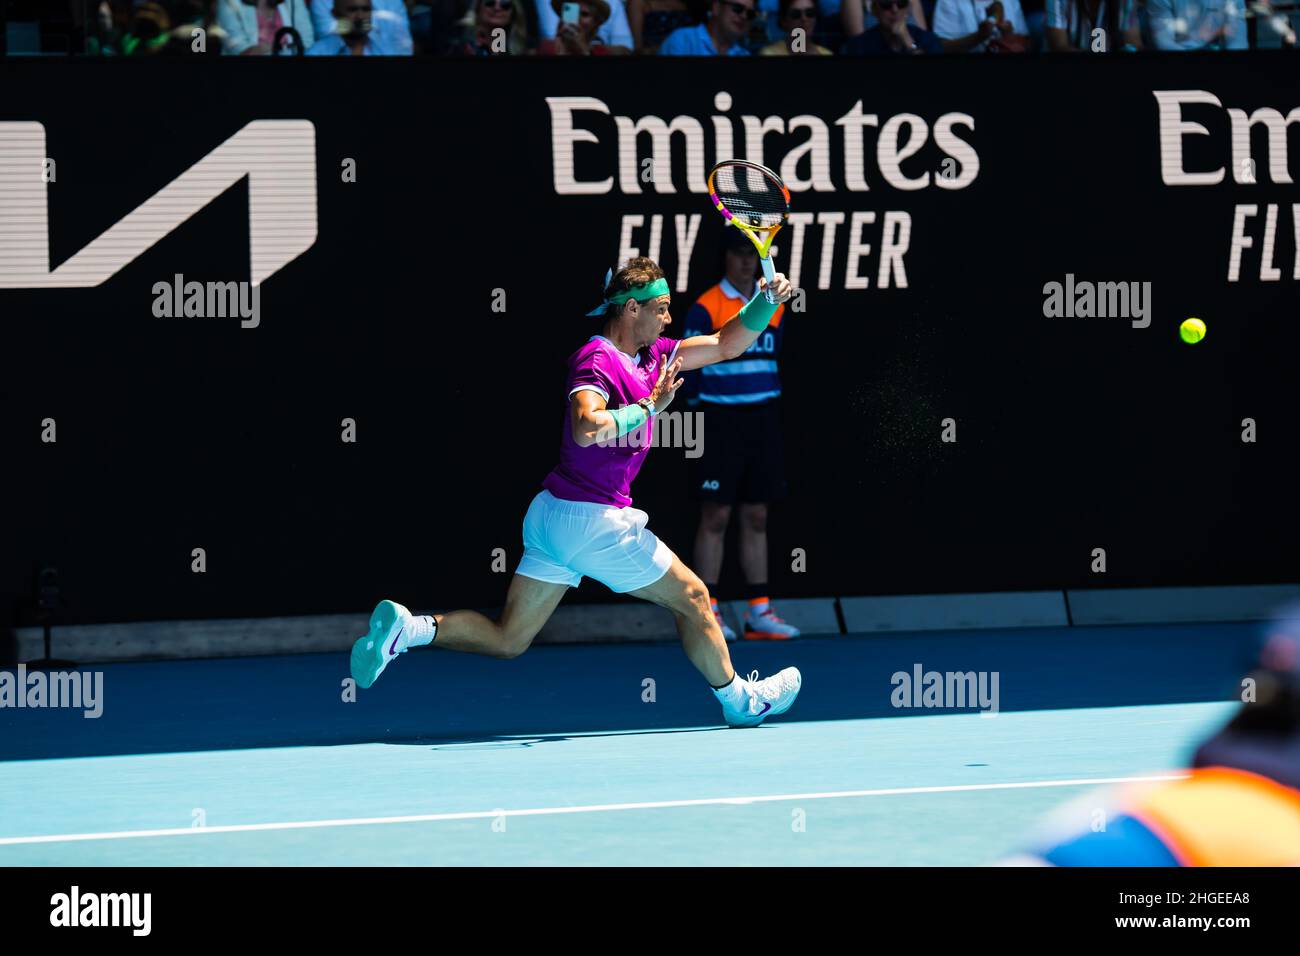 Rafael Nadal sprintet während der Runde 1 mit Marcus Giron in Aktion während der Australian Open 2022, Tennis Grand Slam Turnier in der Rod Laver Arena im Melbourne Olympic Park.(Endstand Nadal gewinnt in 3 Sätzen 6:1, 6:4, 6:2). Stockfoto